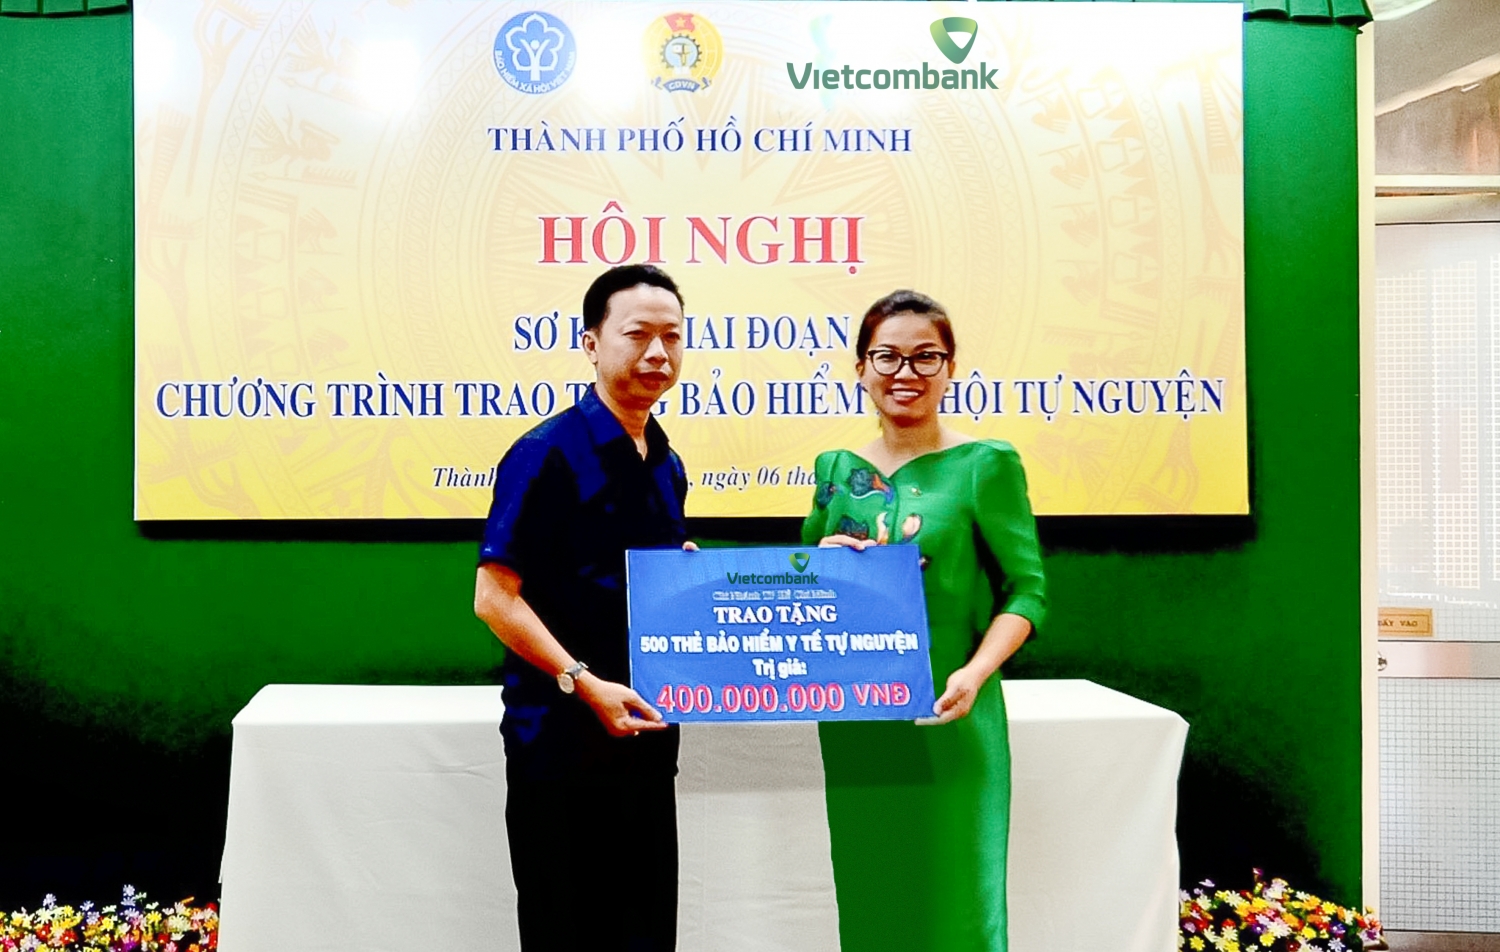 Bà Lê Thị Hòa Bình - Phó Giám đốc Vietcombank TP.HCM (bên phải) trao tặng 500 thẻ Bảo hiểm Ytế cho đại diện LĐLĐ TP.HCM để phân bổ đến những hoàn cảnh đoàn viên khó khăn